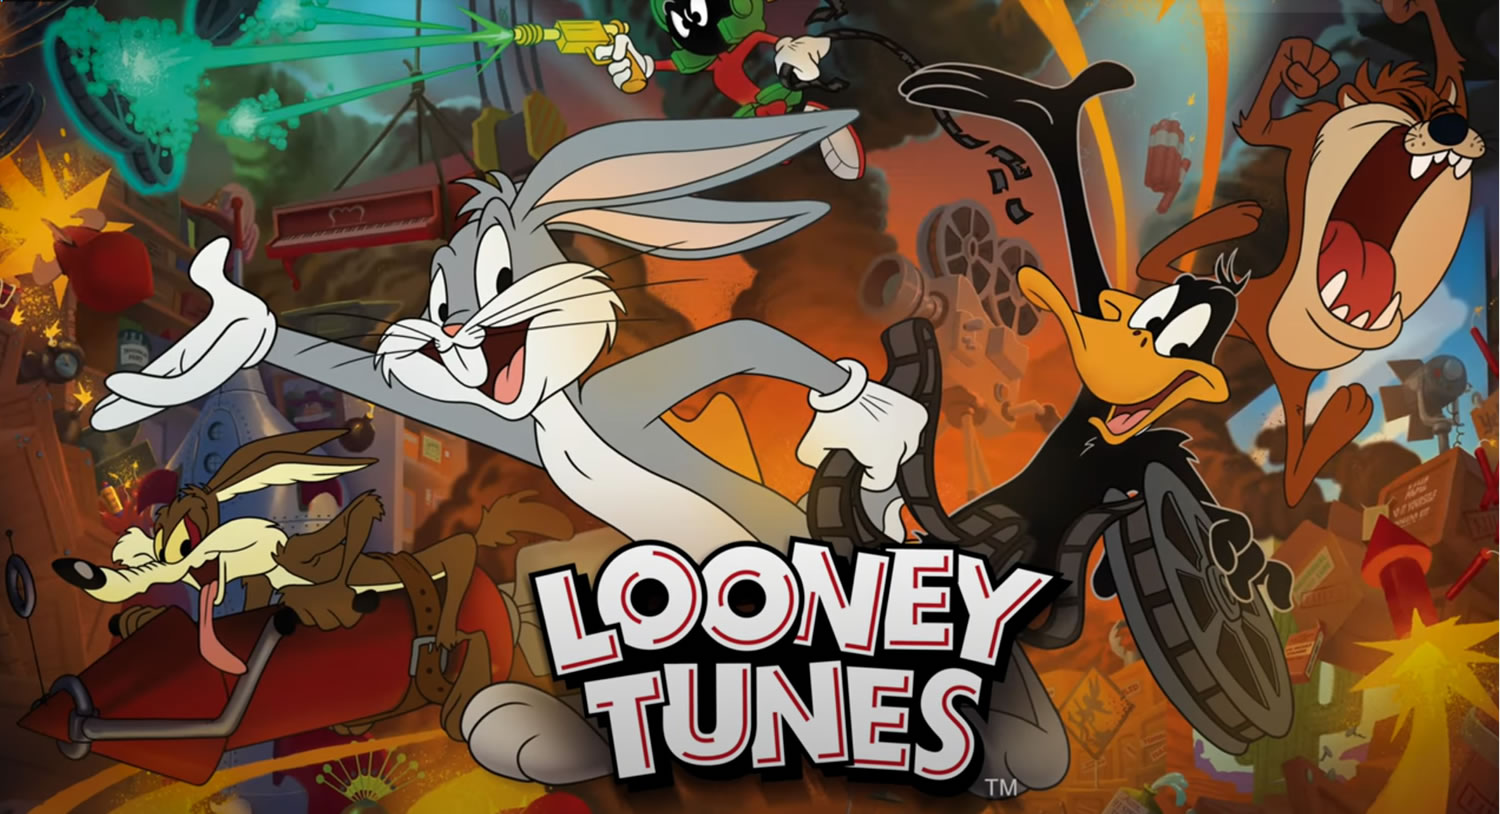 Looney Tunes Pinball Machine